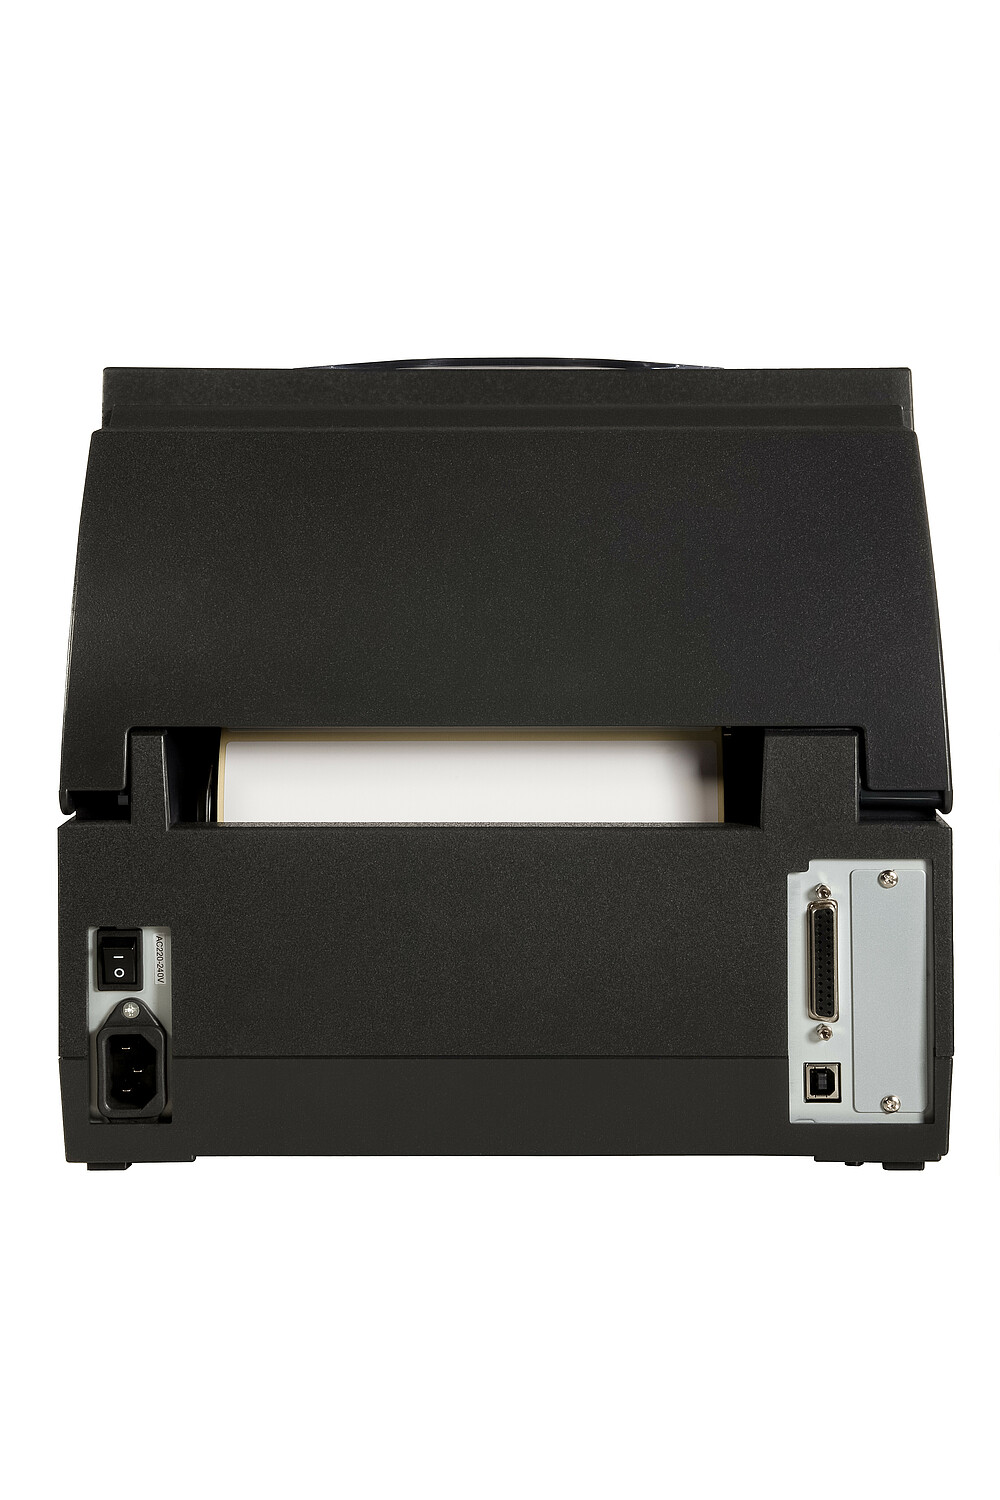 Citizen  CL-S6621 Принтер для этикеток черный черный